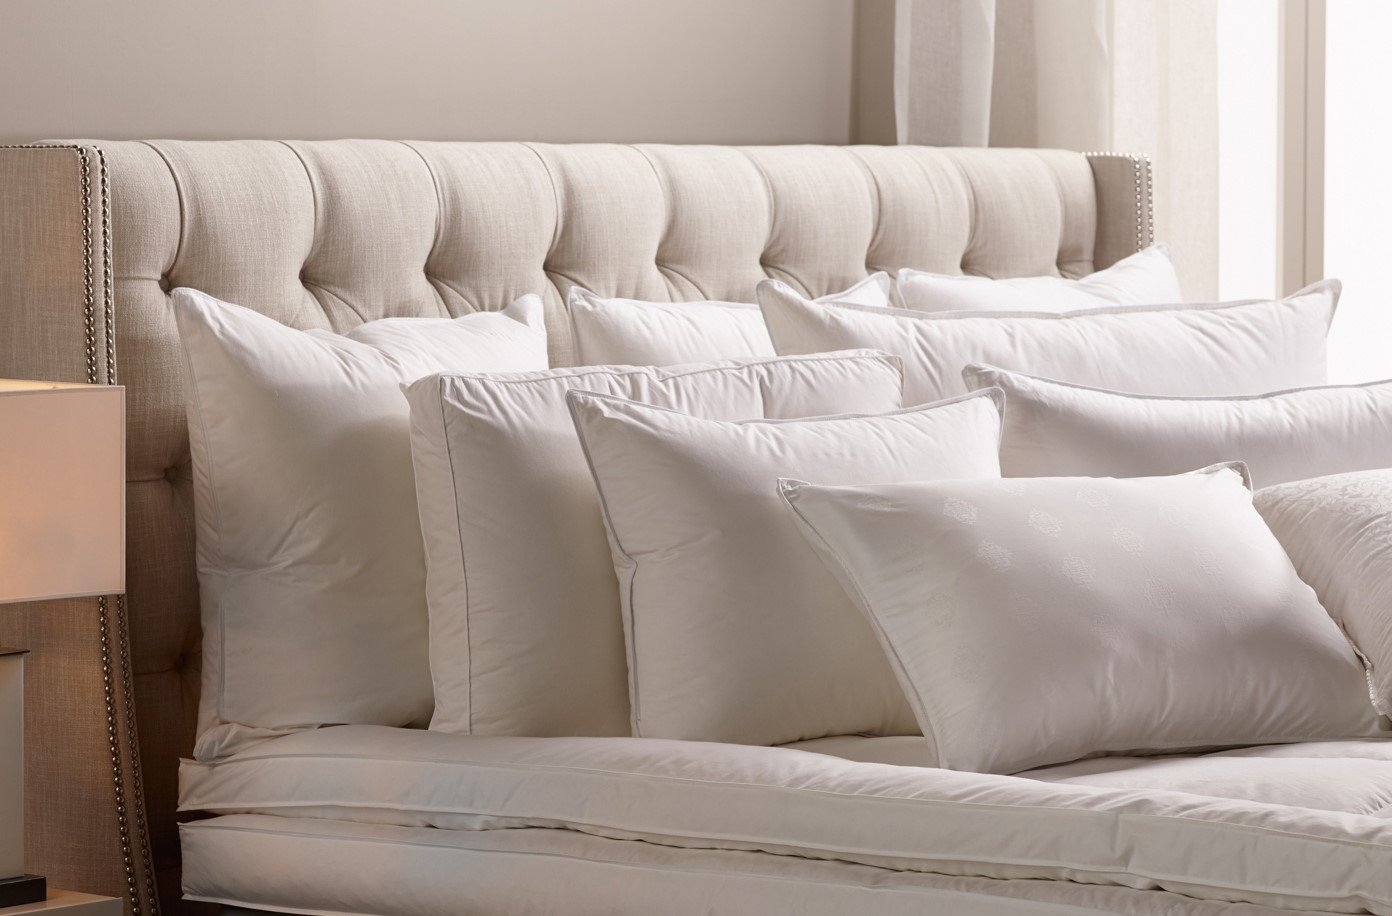 Classic 80% Down Pillow, Queen Size, Medium/Firm Firmness - Image 1